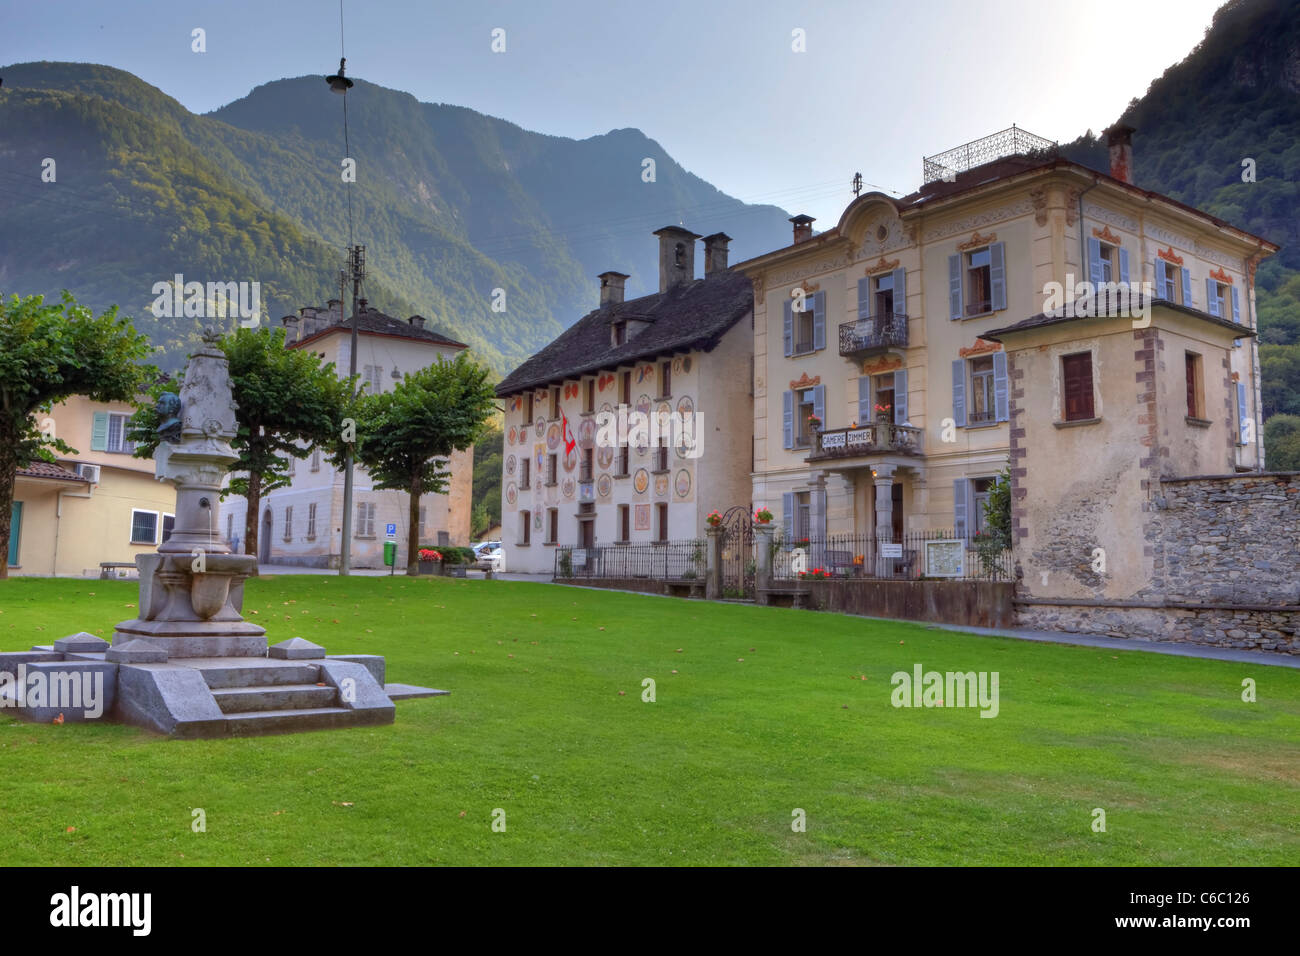 Der Dorfplatz mit Brunnen und Skulpturen in Cevio, Vallemaggioa, Tessin, Schweiz Stockfoto